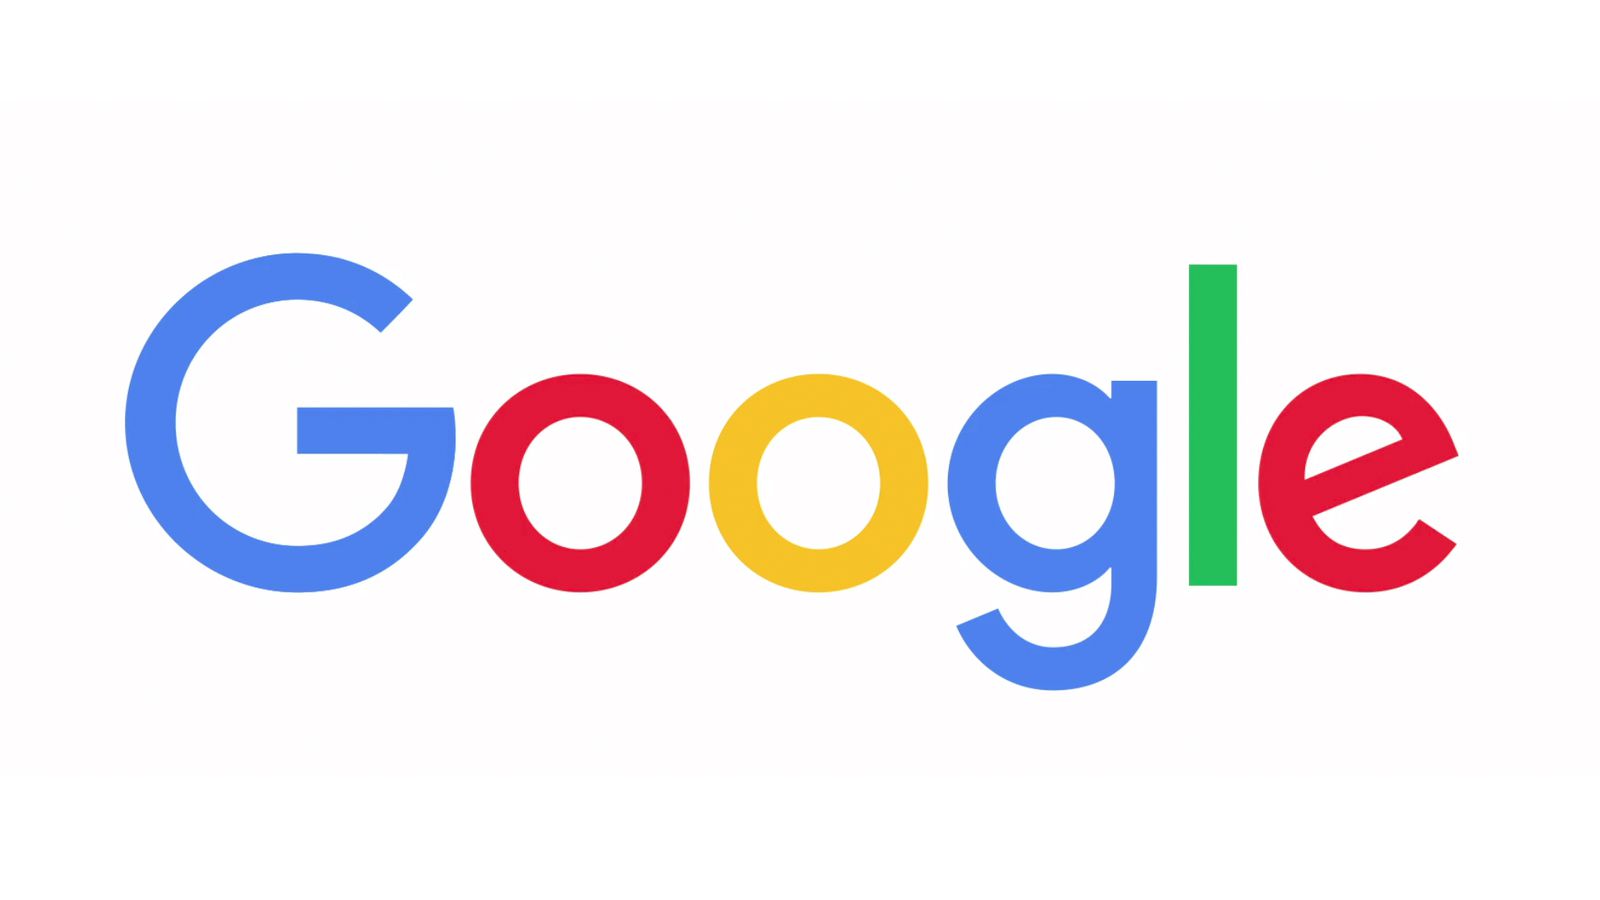 akcje google logo